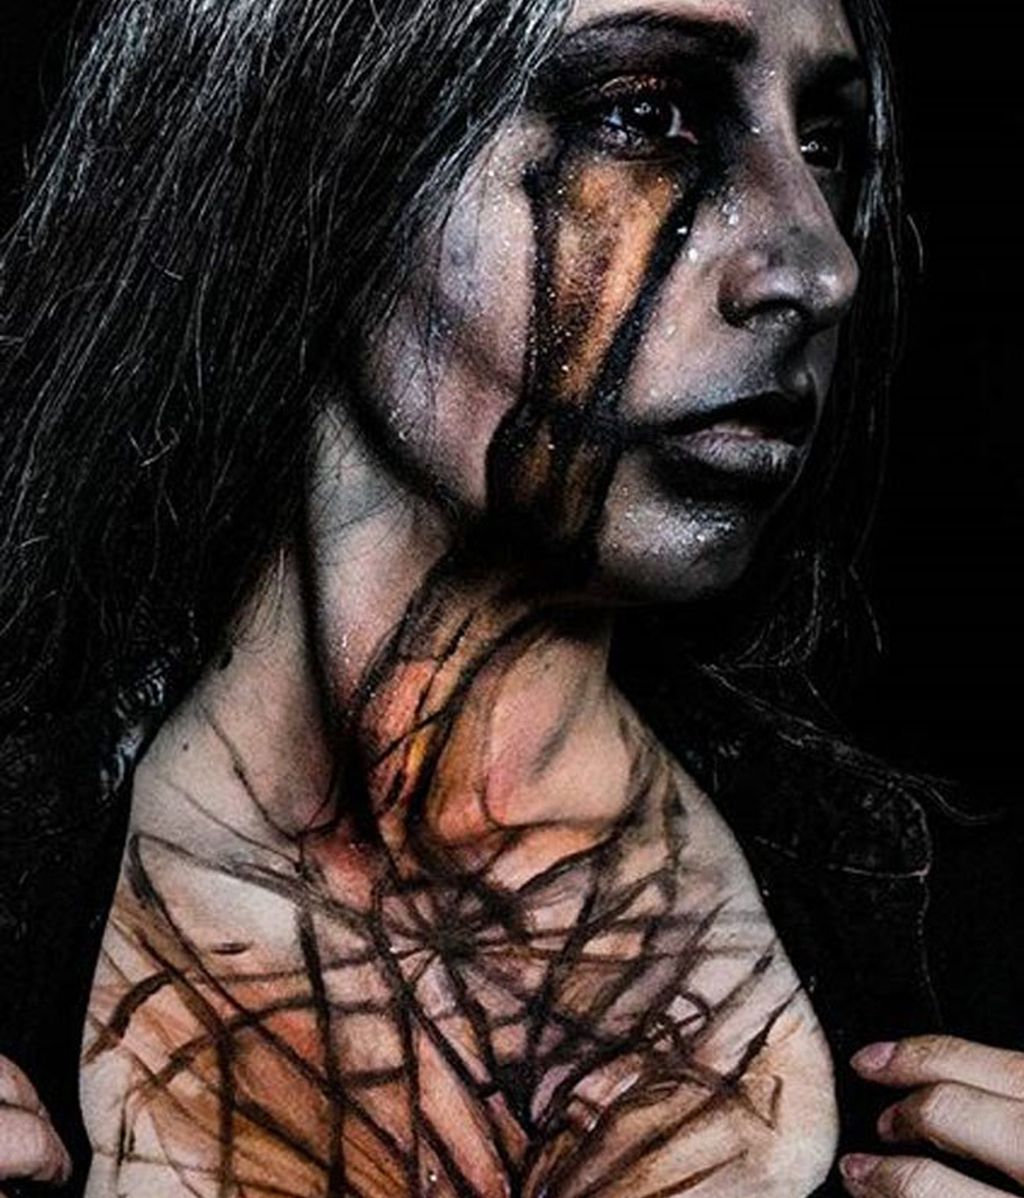 Esta maquilladora encarna a los seres más terroríficos para mostrar su arte